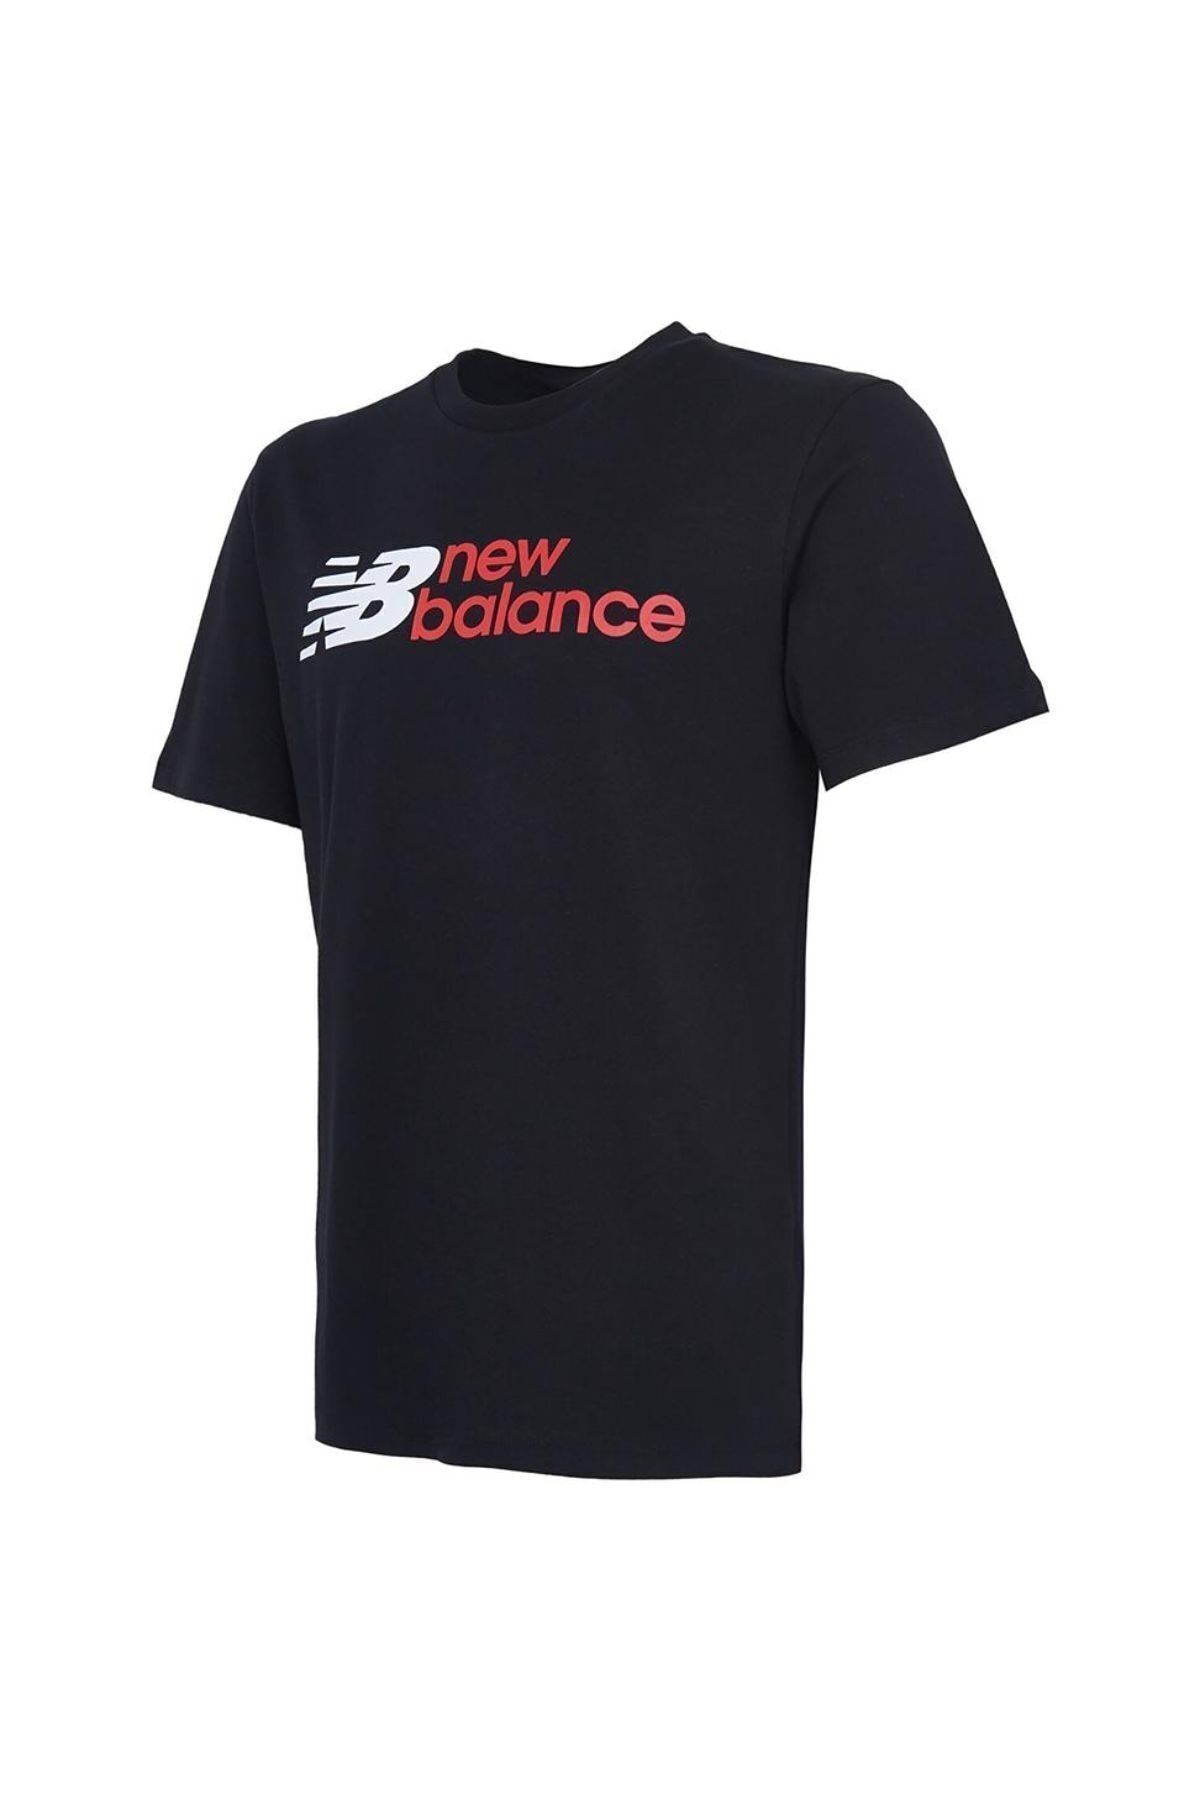 New Balance Nb Man Lıfestyle T-shırt Erkek Tişört Mnt1354-bk